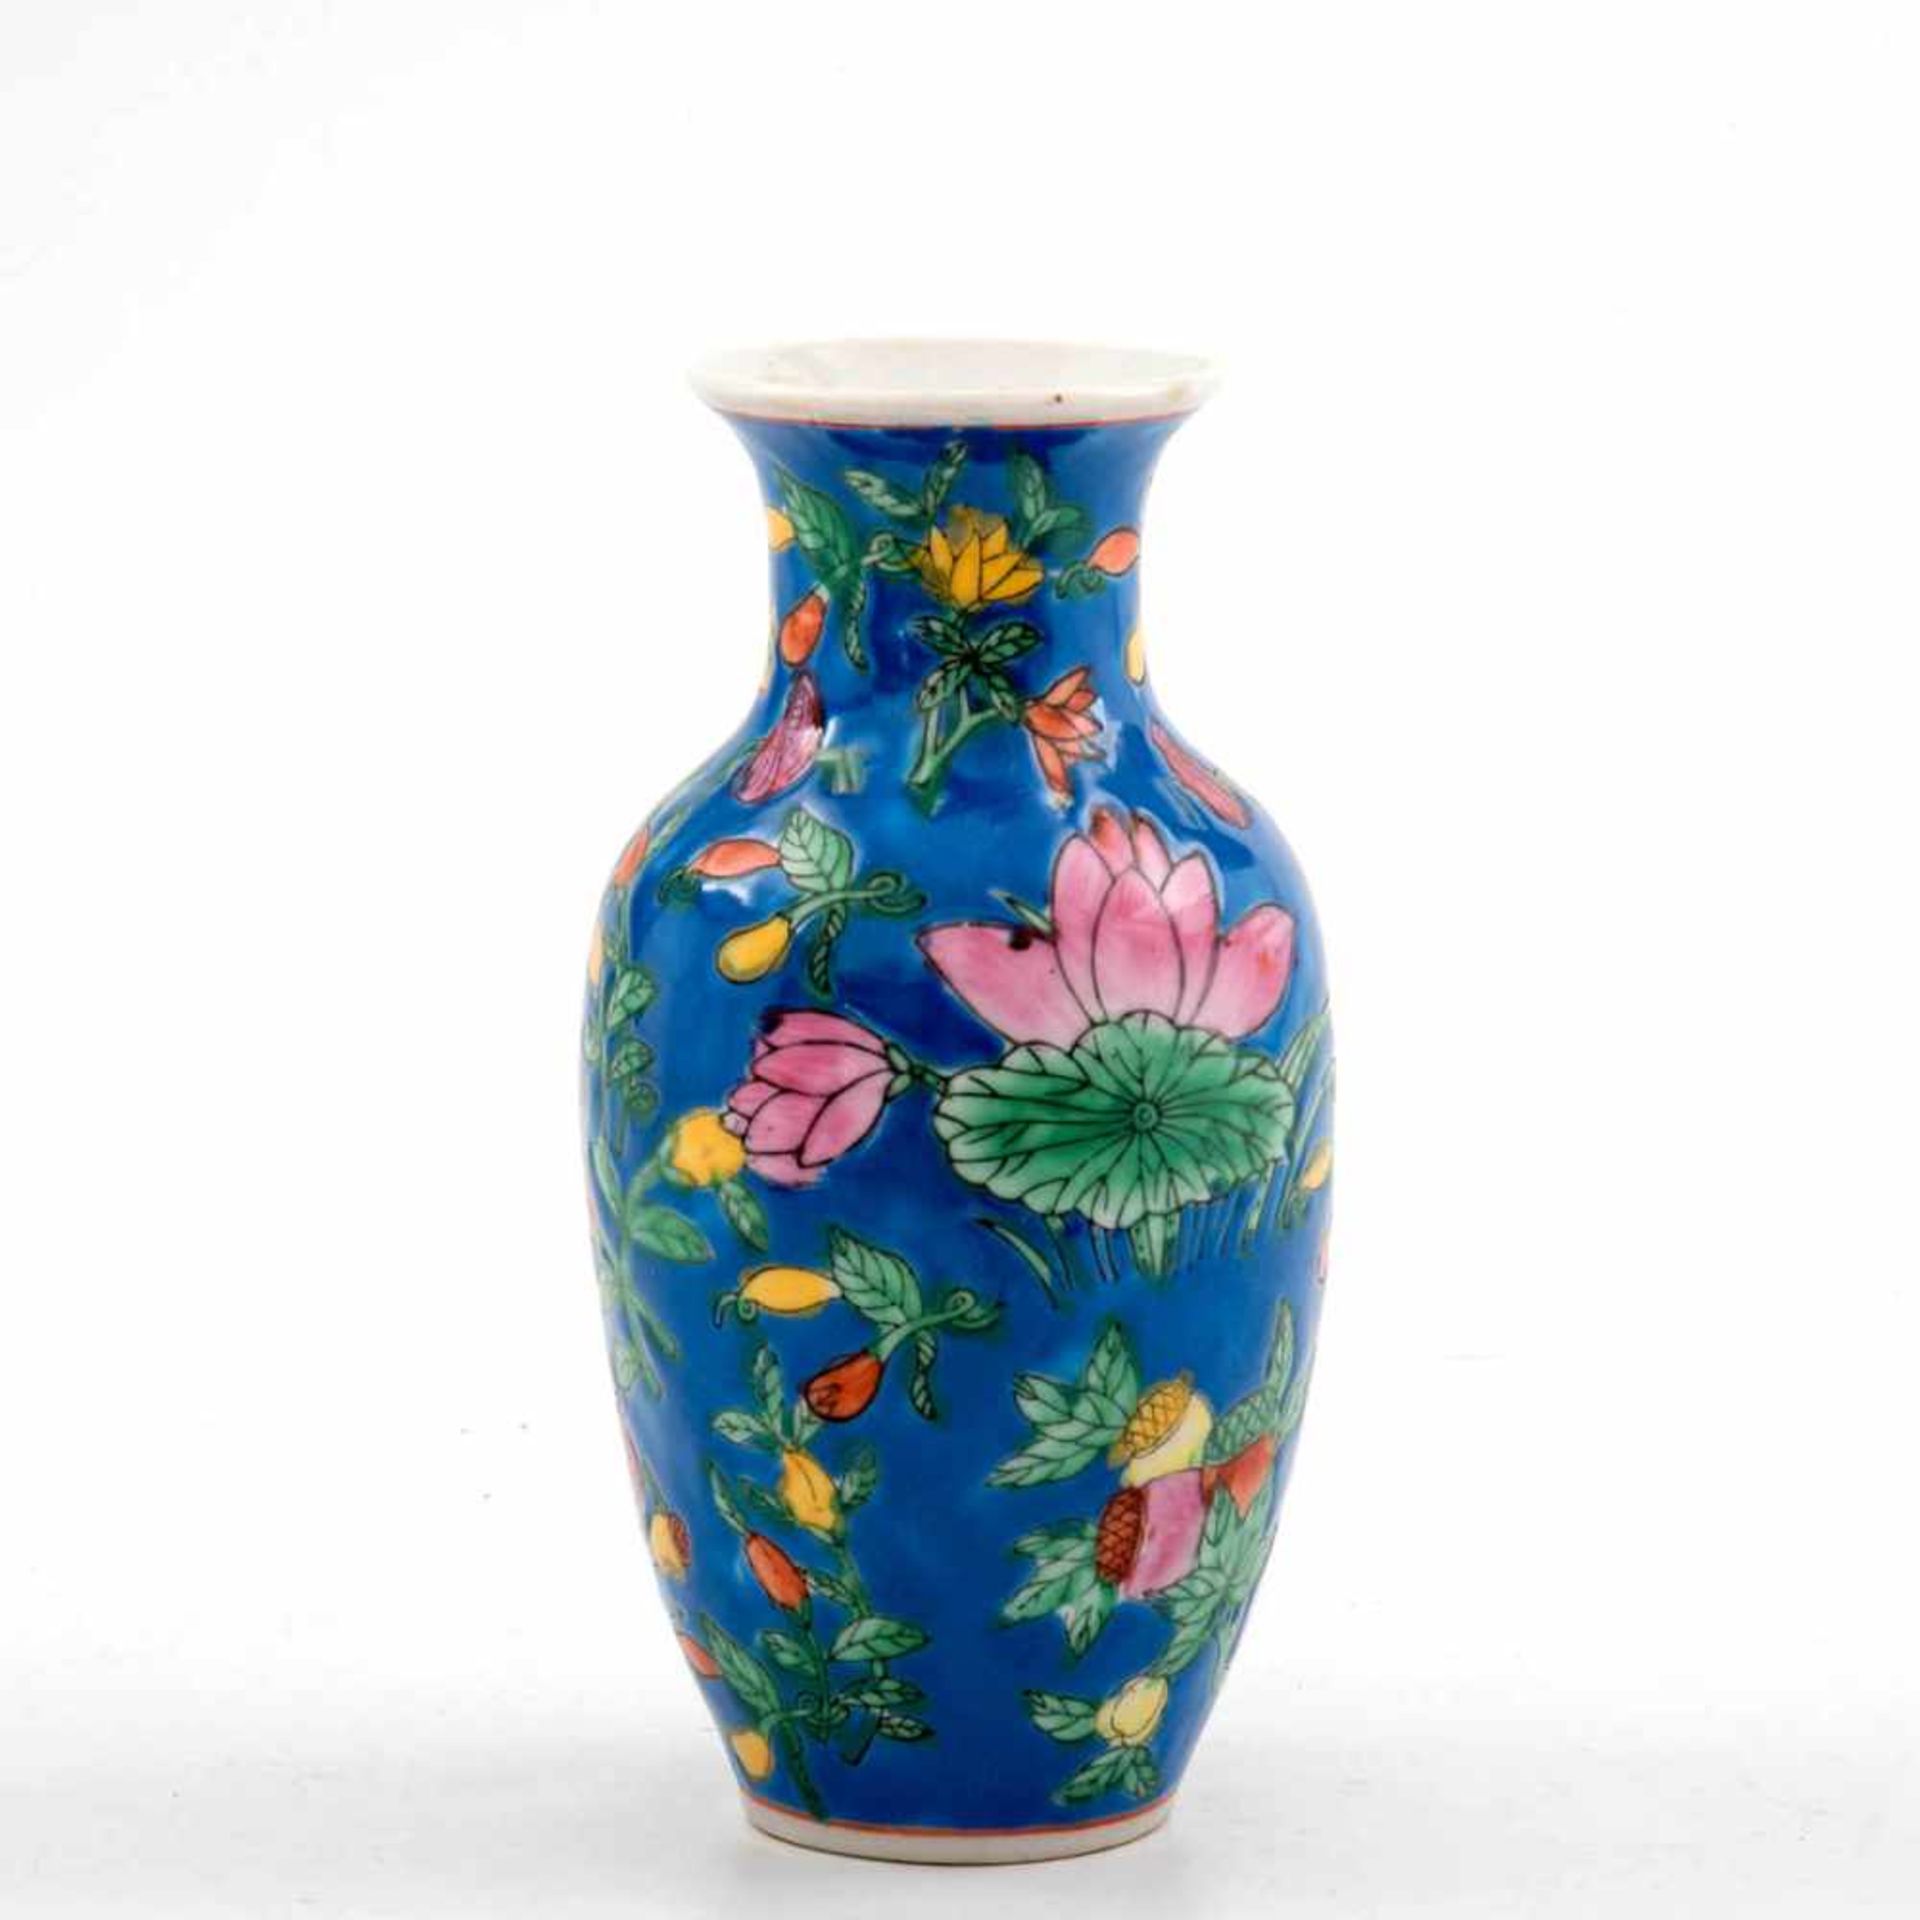 Vase, China um 1900 Porzellan auf mittelblauem Fond polychrom mit Früchten und Blüten bemalt.